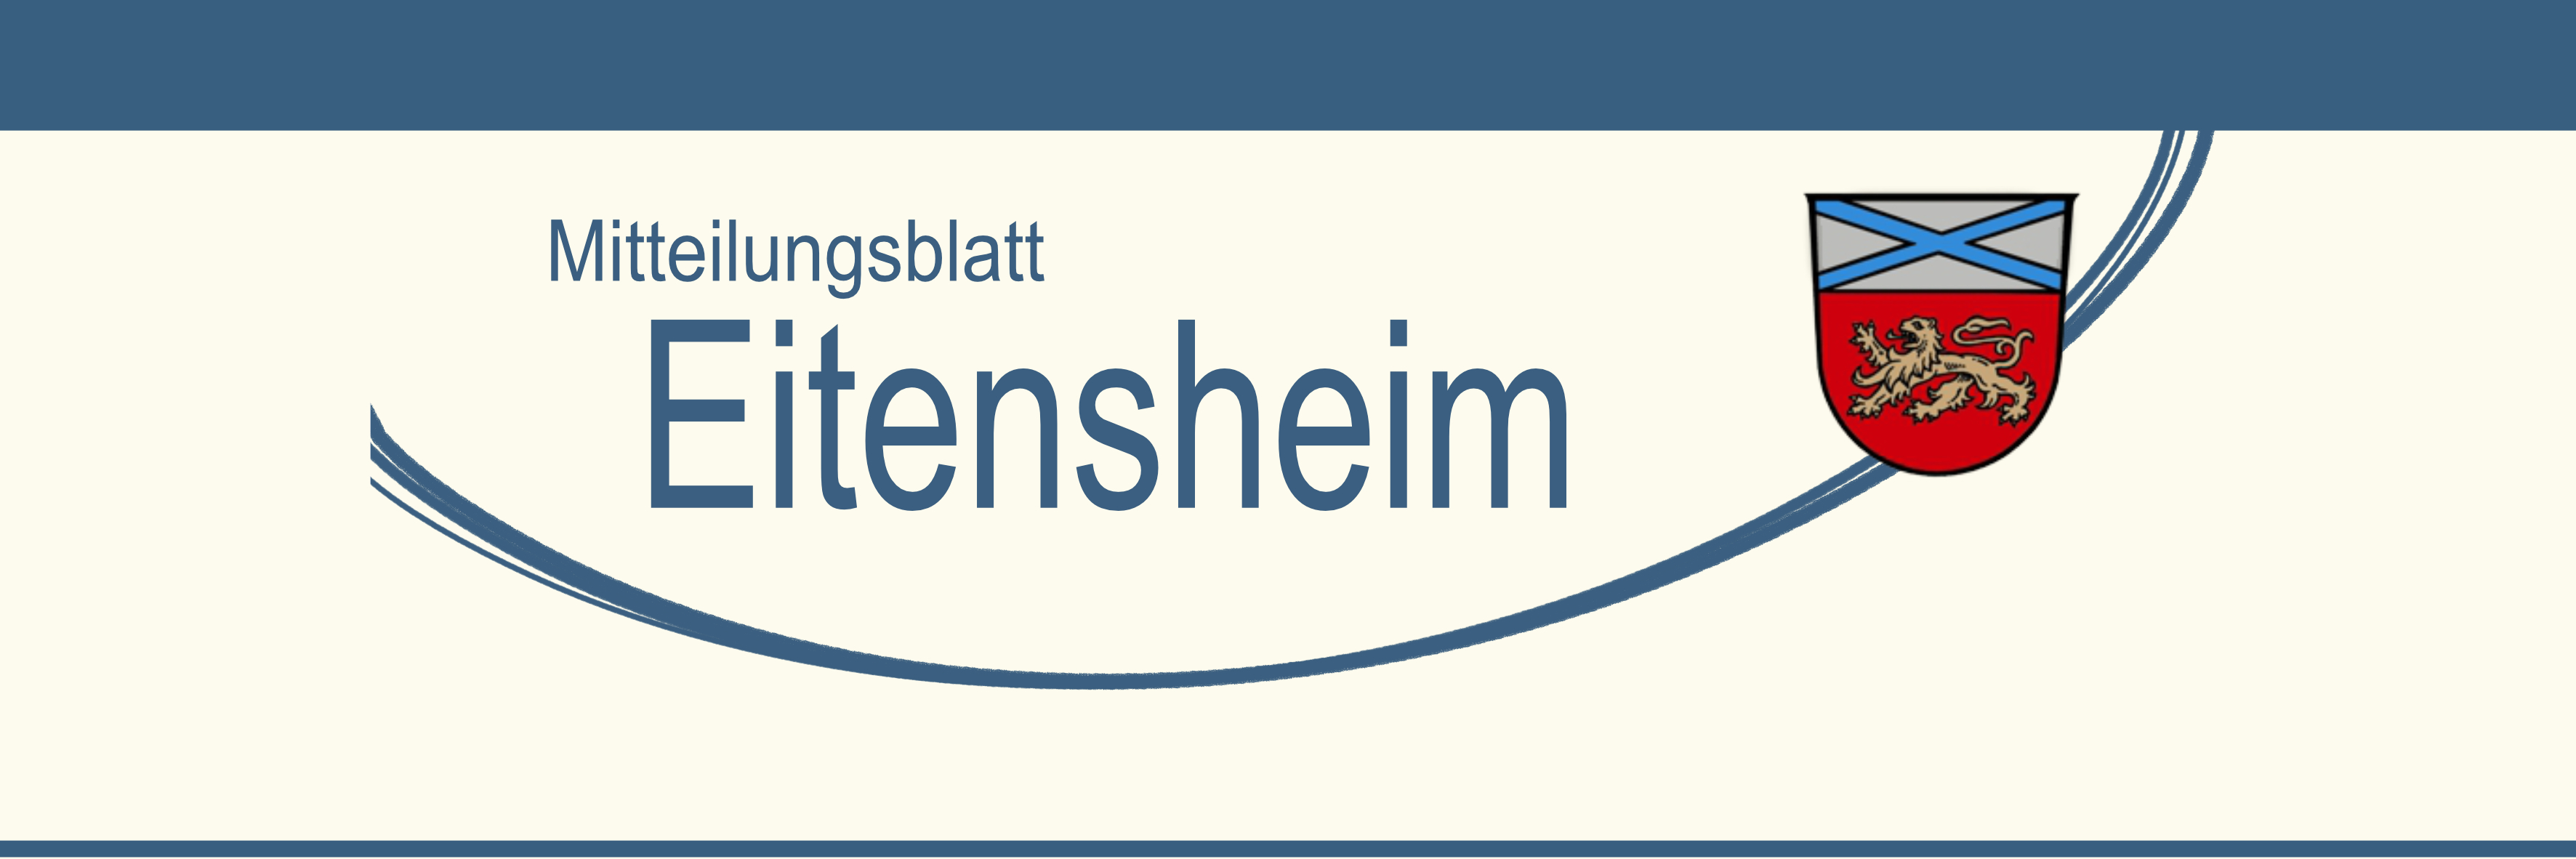 Mitteilungsblatt Eitensheim